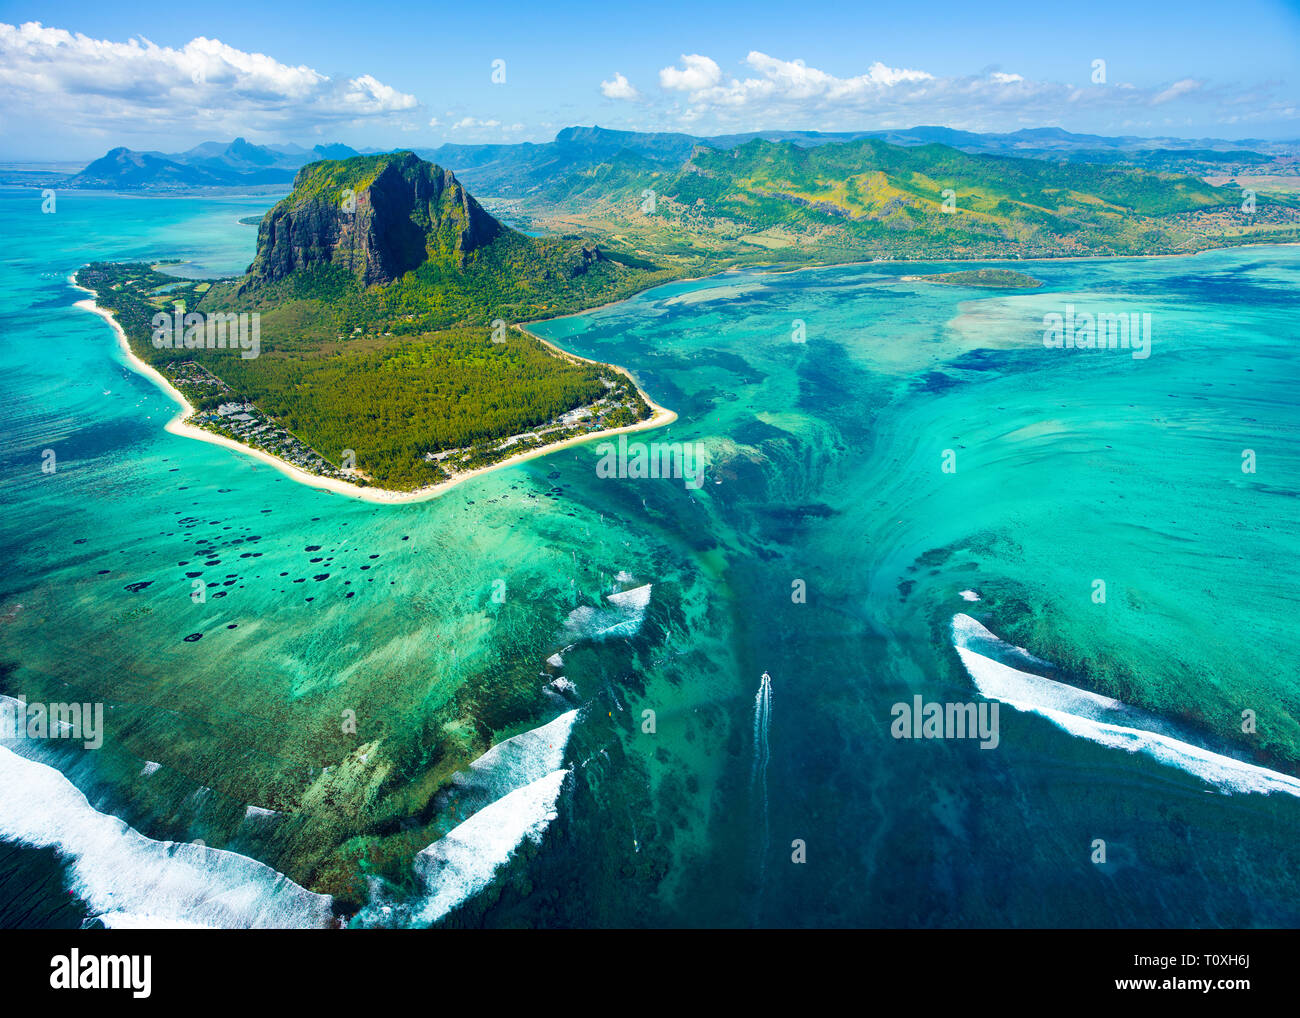 Vue aérienne de l'île Maurice et le célèbre panorama de montagne Le Morne Brabant, beau lagon bleu et chute d'eau Banque D'Images